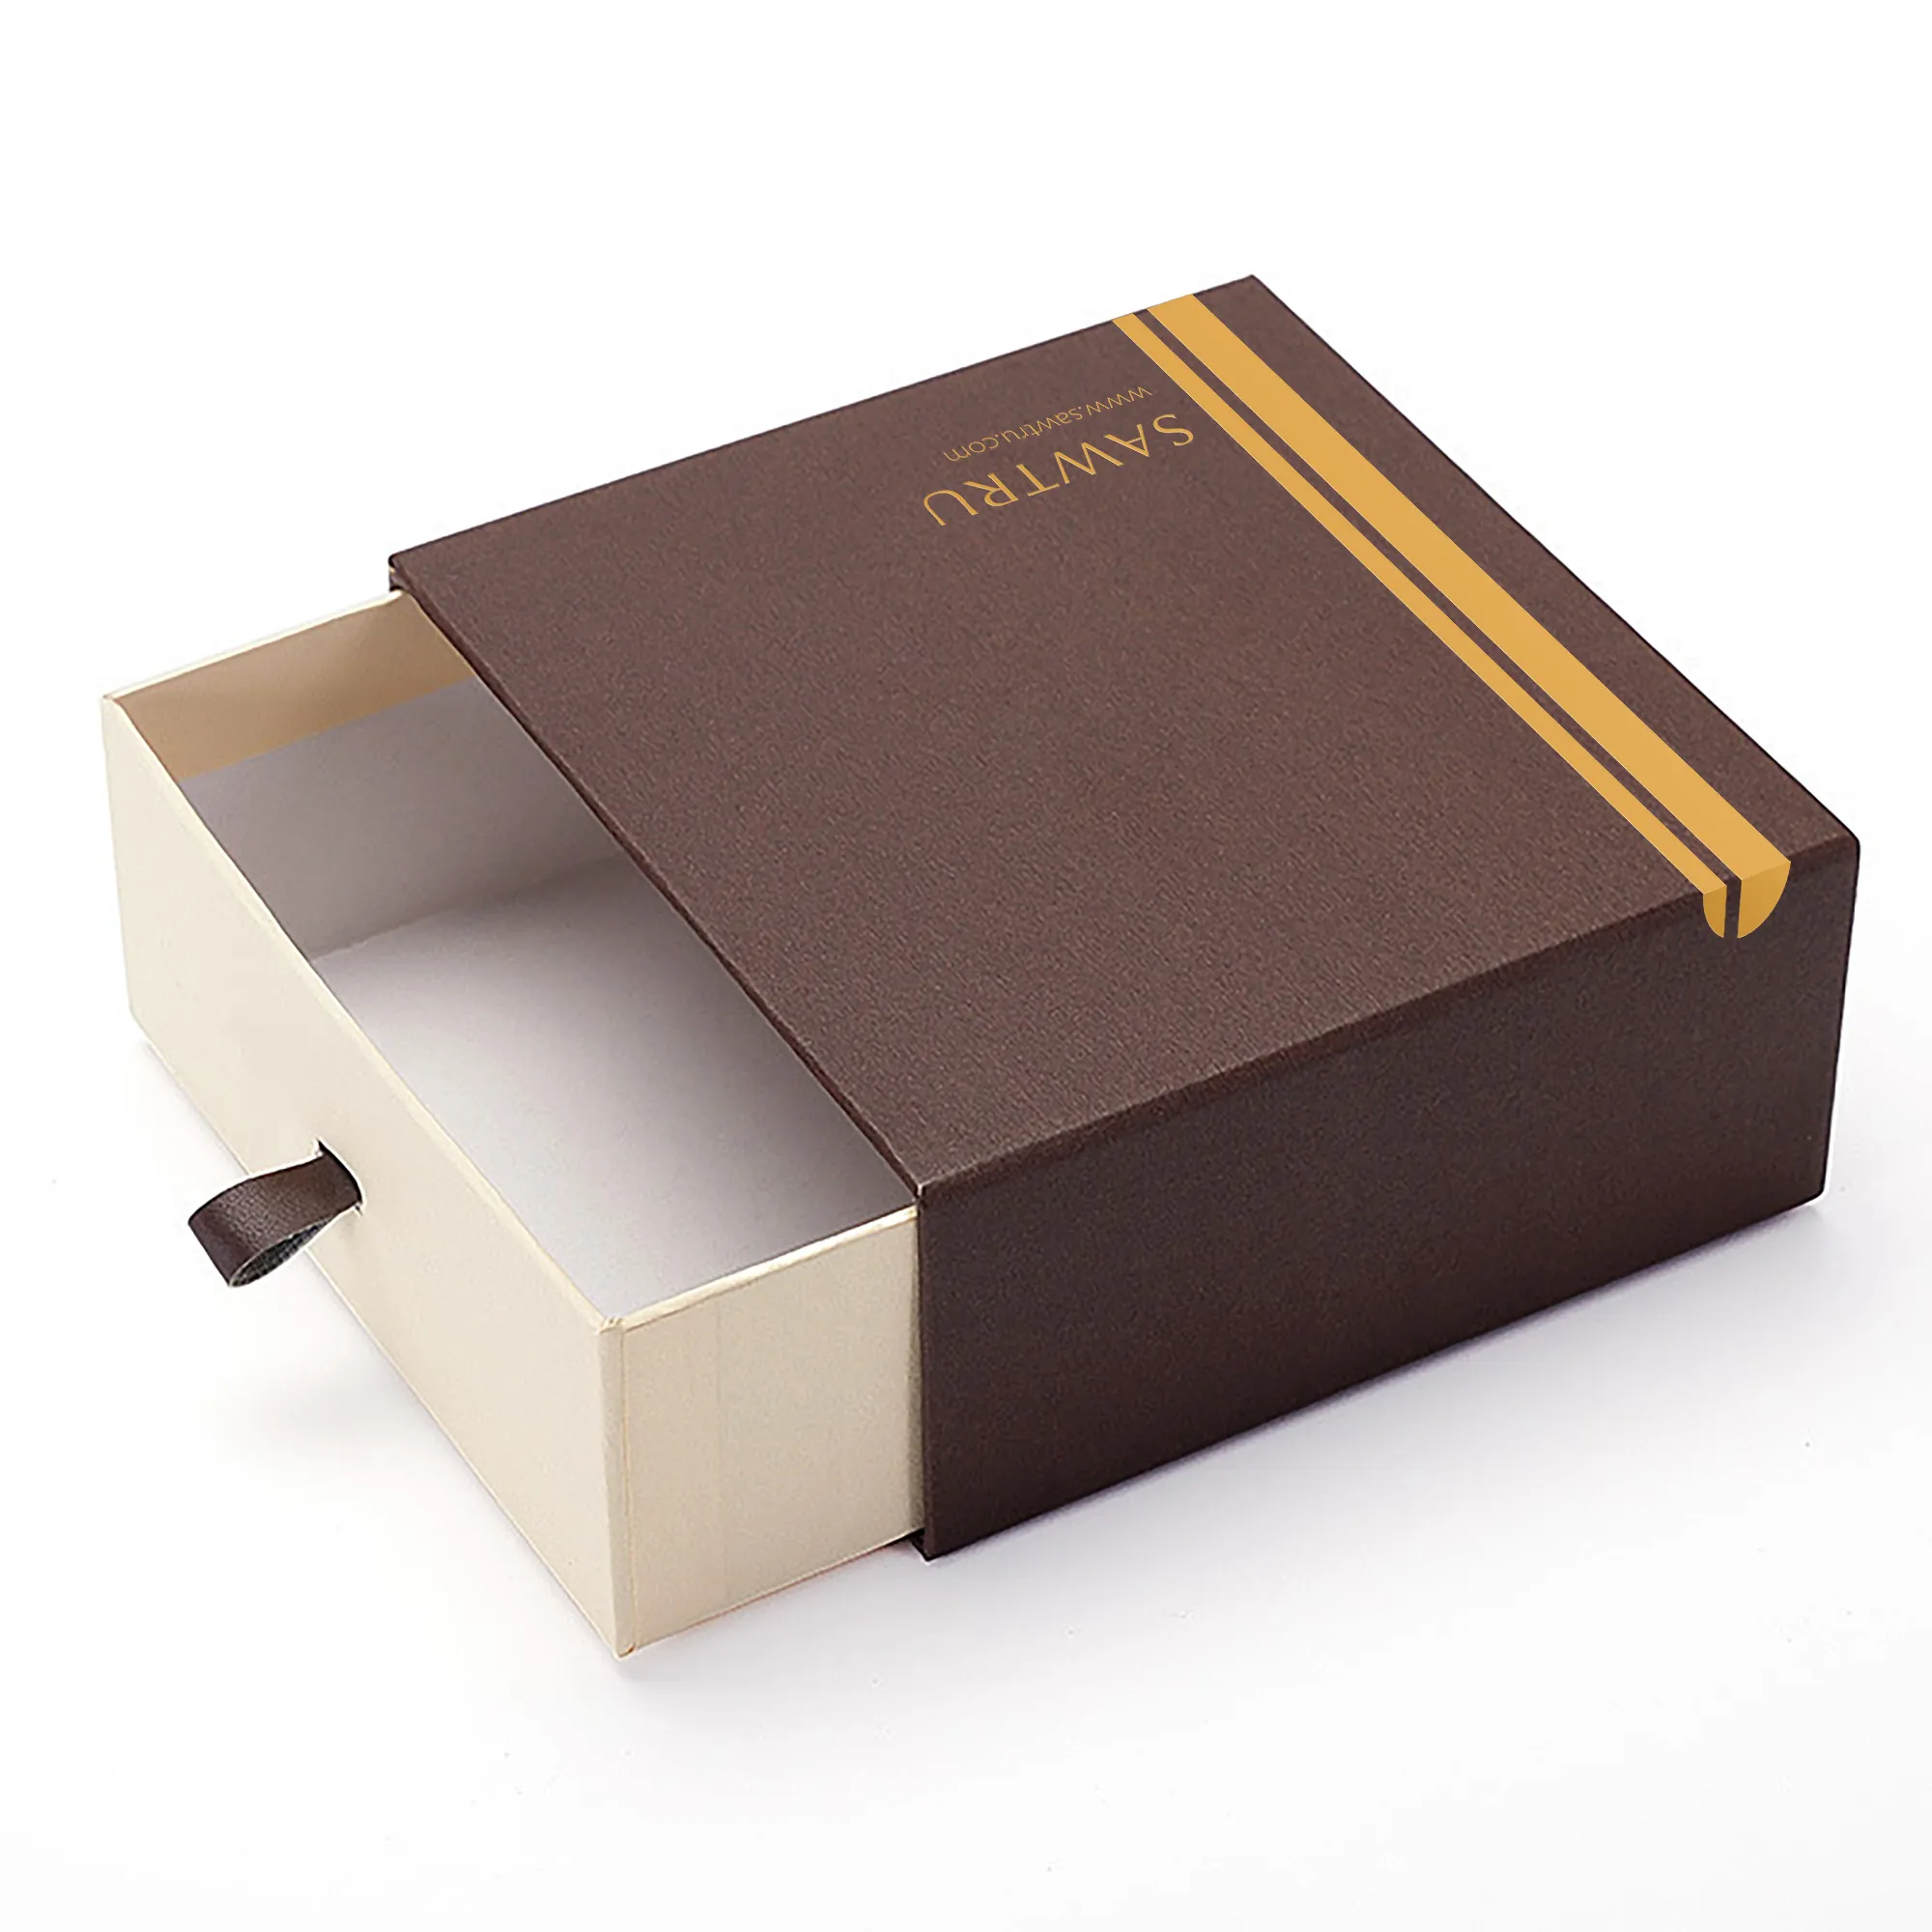 Moda tasarım sert karton kağıt ambalaj hediye Streak çekmece kutusu elbise takı mum kozmetik için